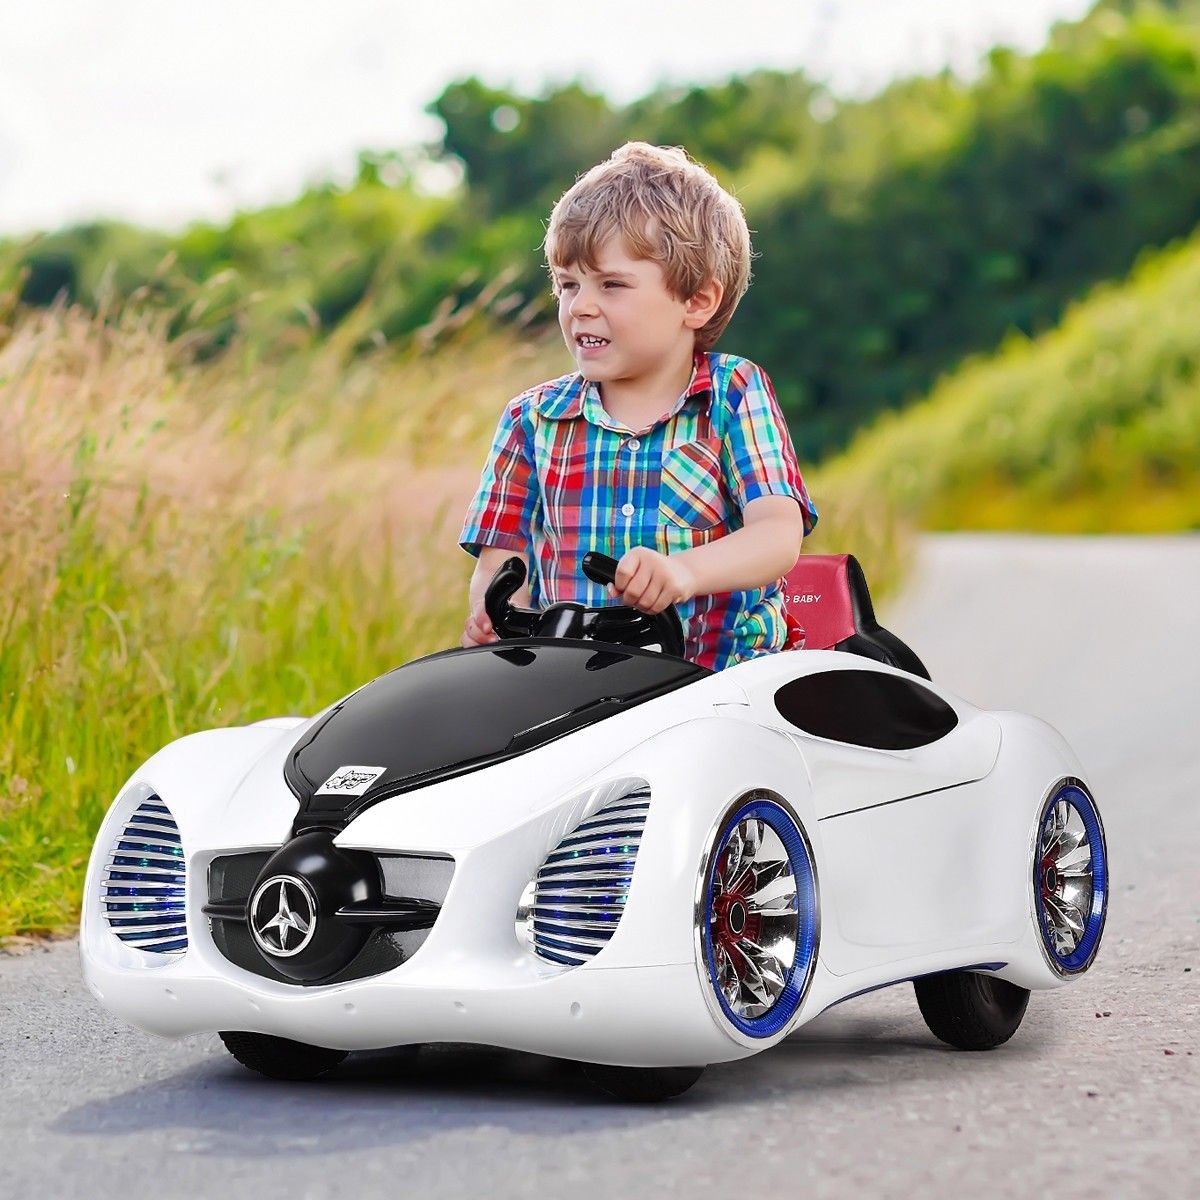 הרפתקאות בחוץ: חקר הטבע עם מכוניות ילדים לנהיגה